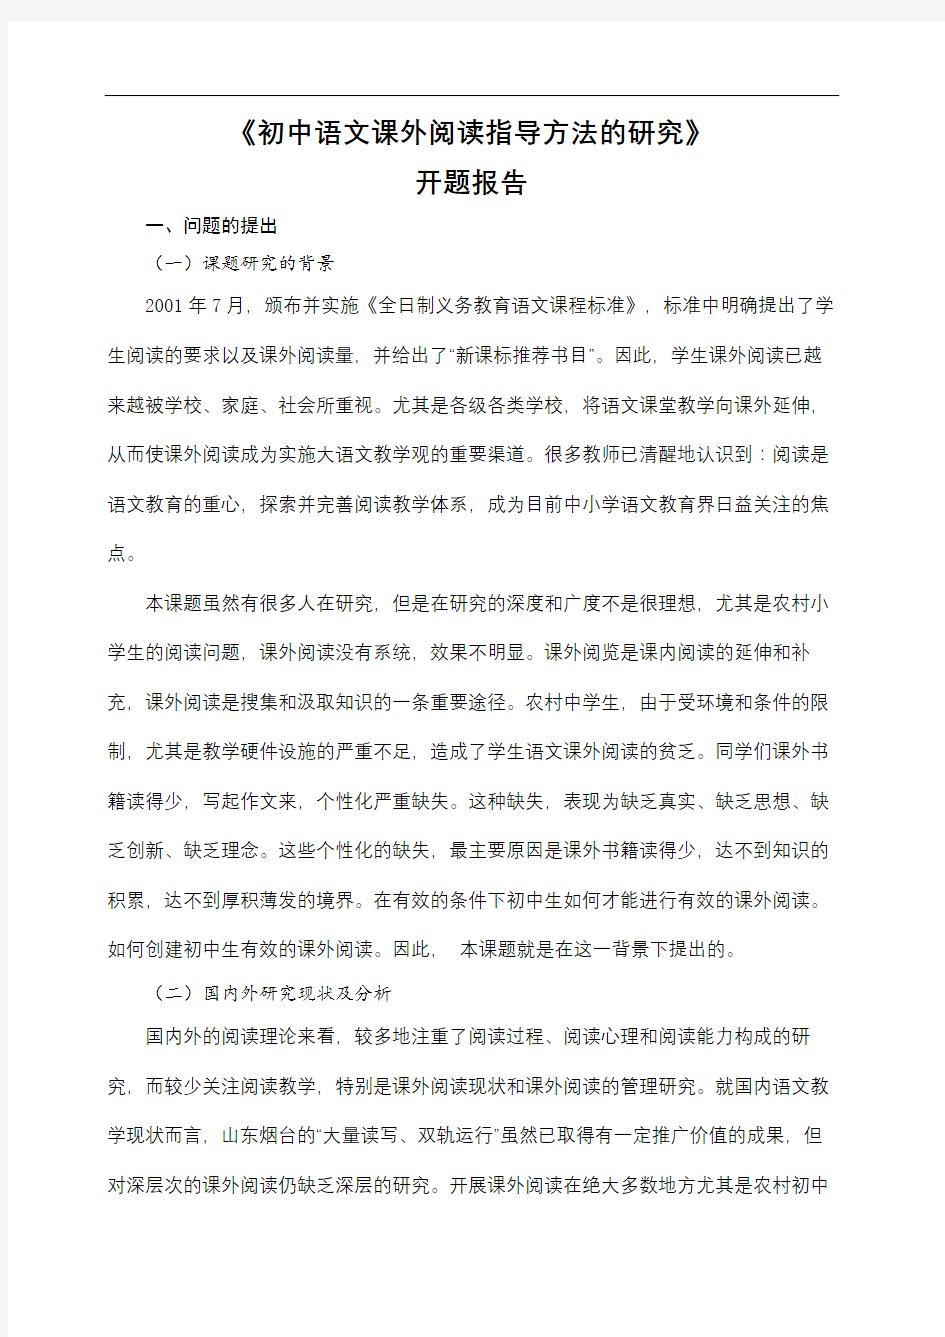 初中语文课外阅读指导方法的开题报告